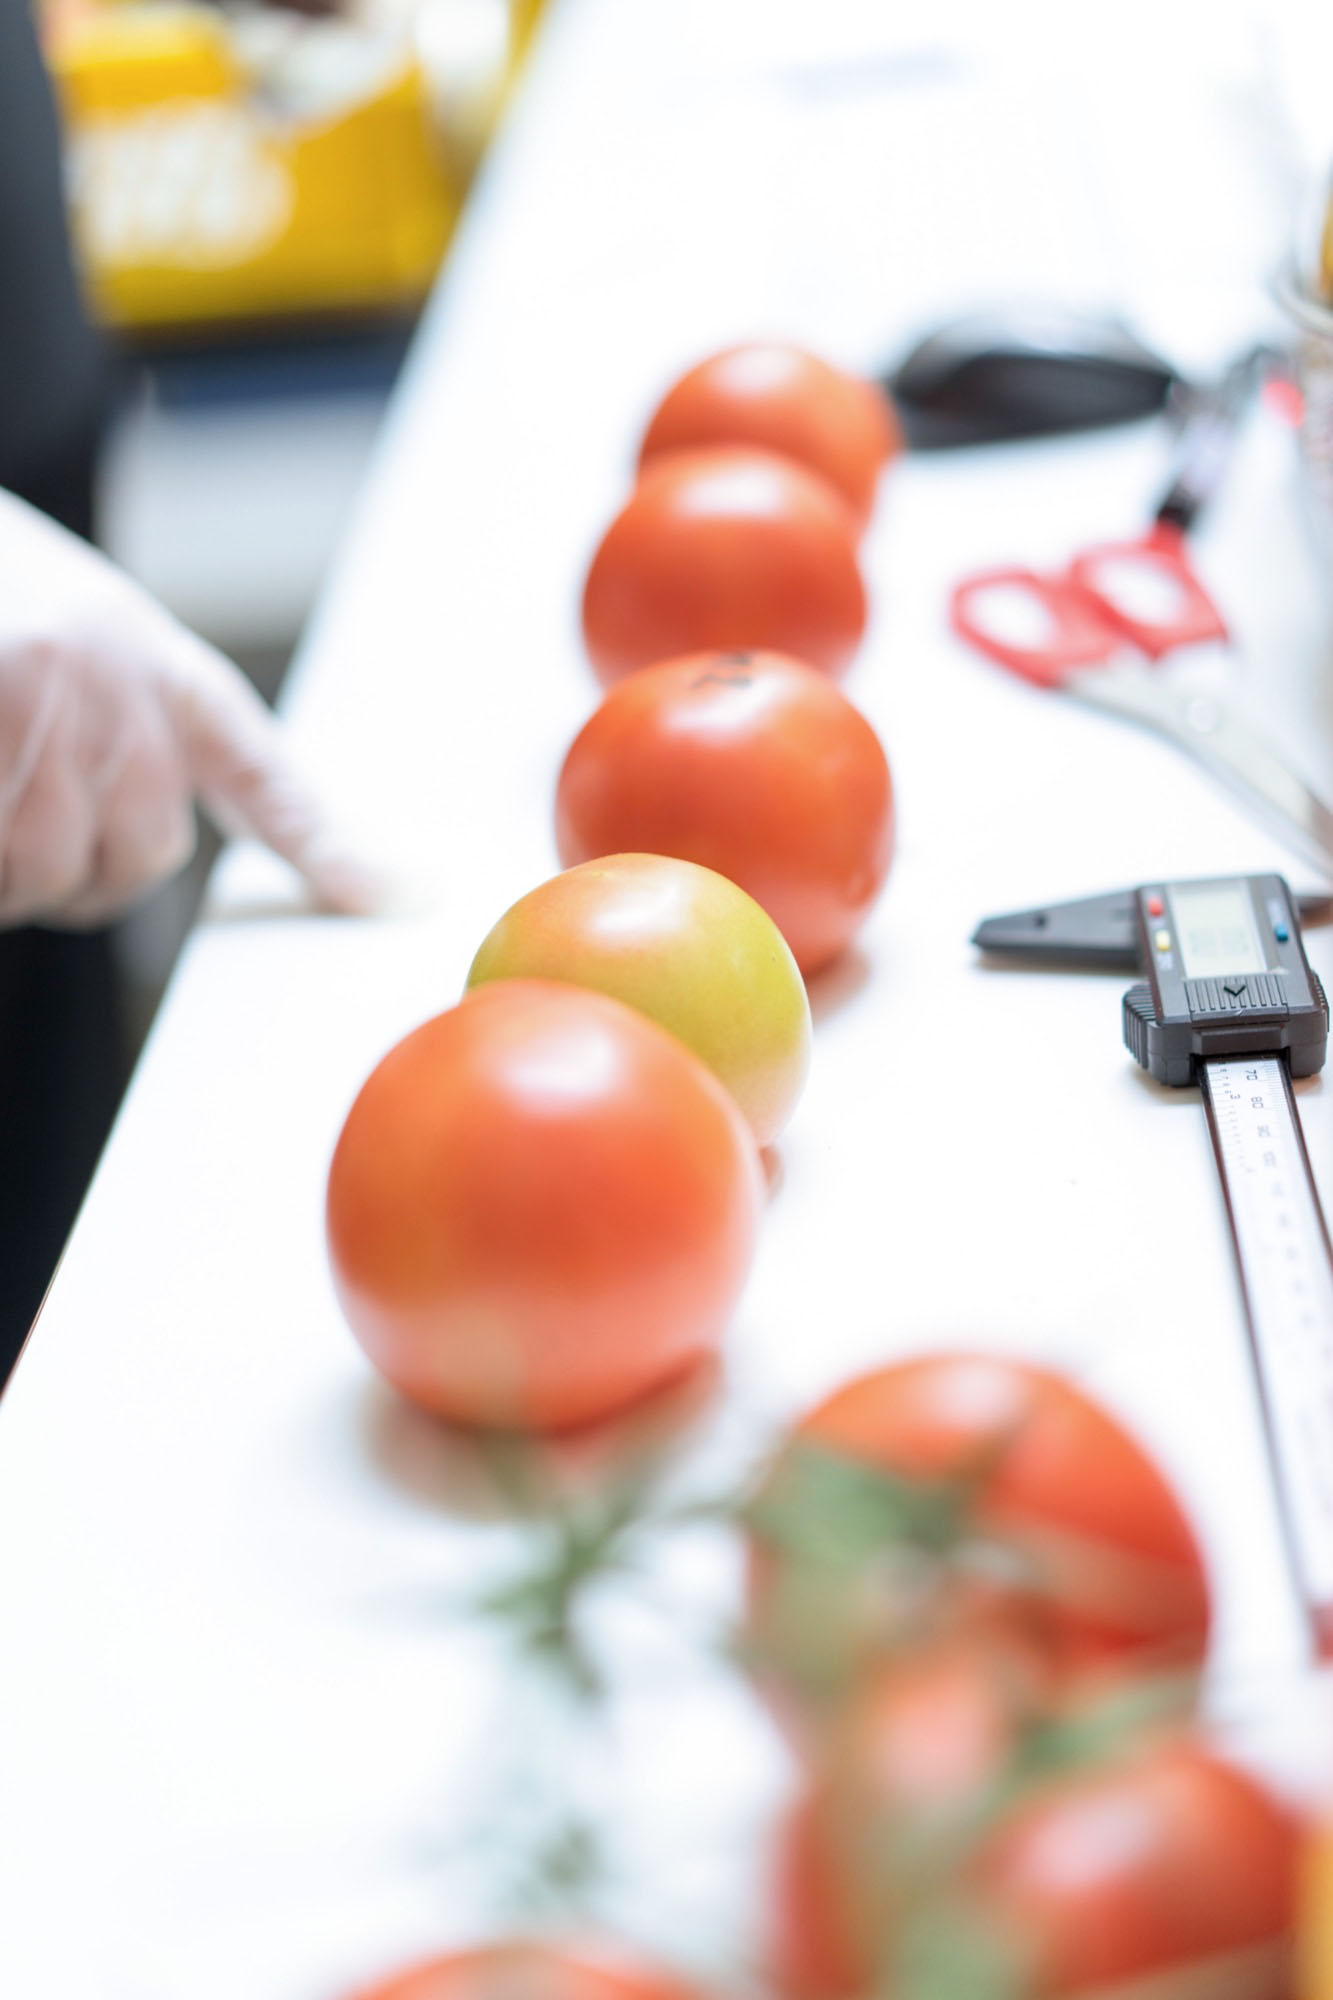 Het belang van consumentenonderzoek en monitoring voor voedselkwaliteit in de AGF 